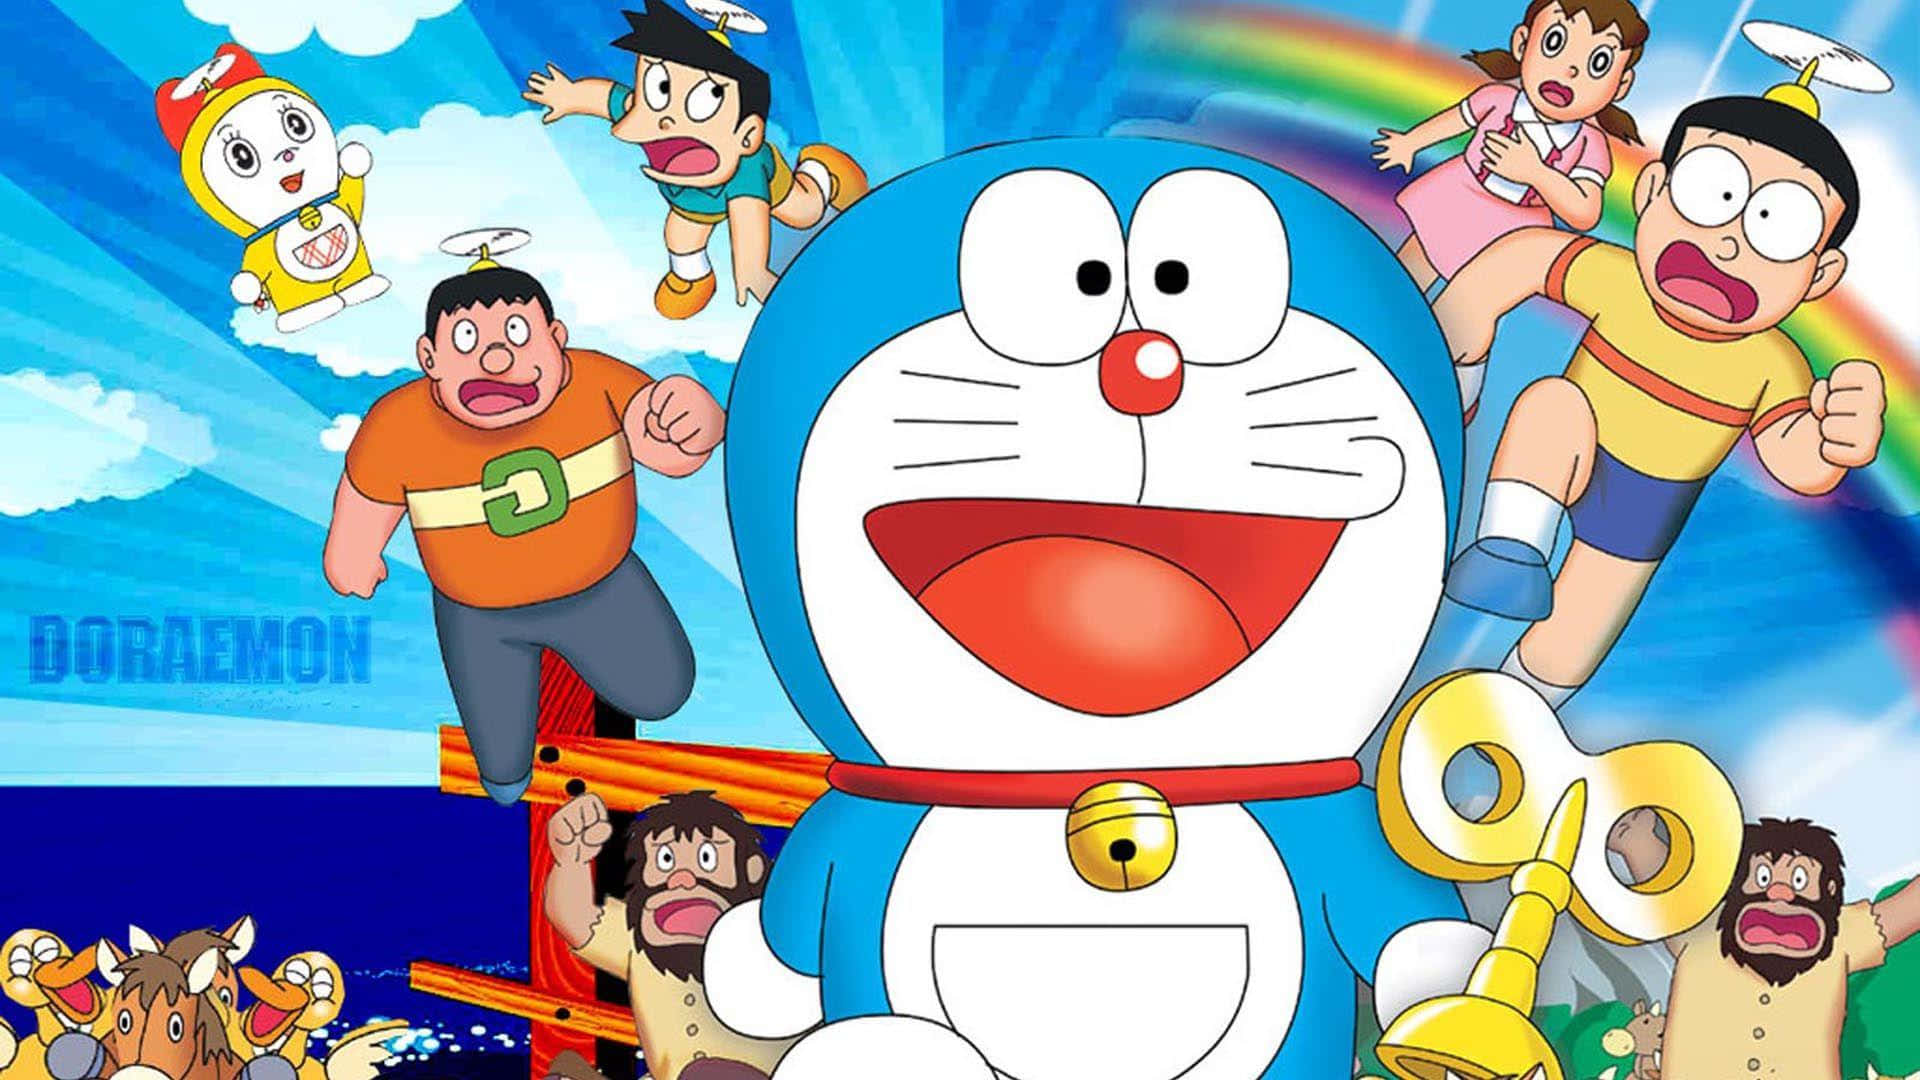 1et Billede I Nærbillede Af Den Populære Japanske Tegneseriefigur, Doraemon.